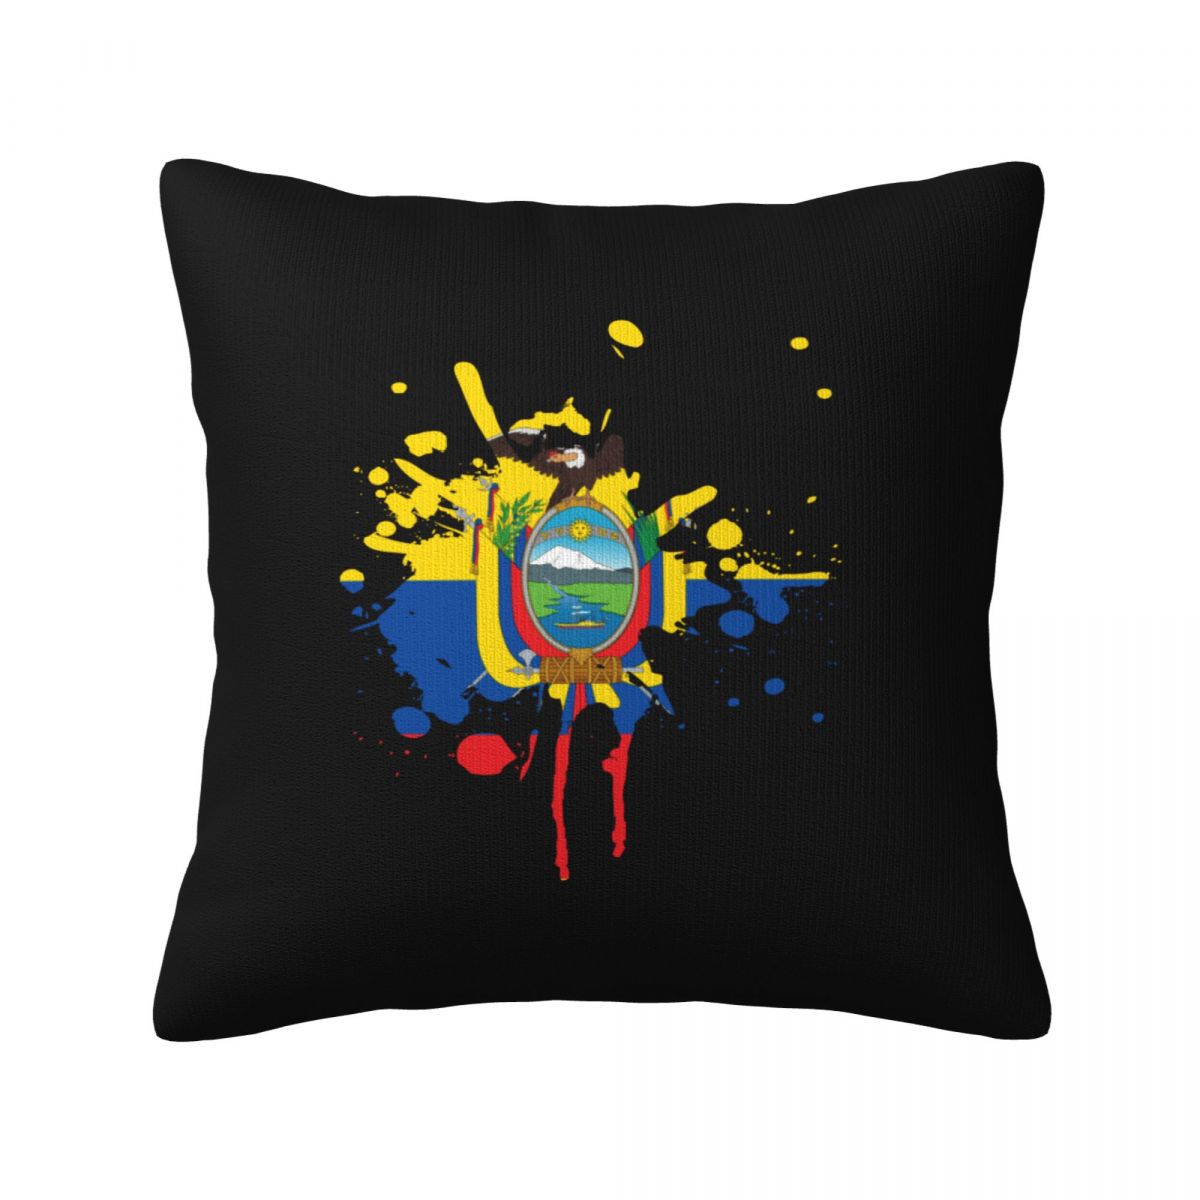 Ecuador Ink Spatter Decorative Throw Pillow